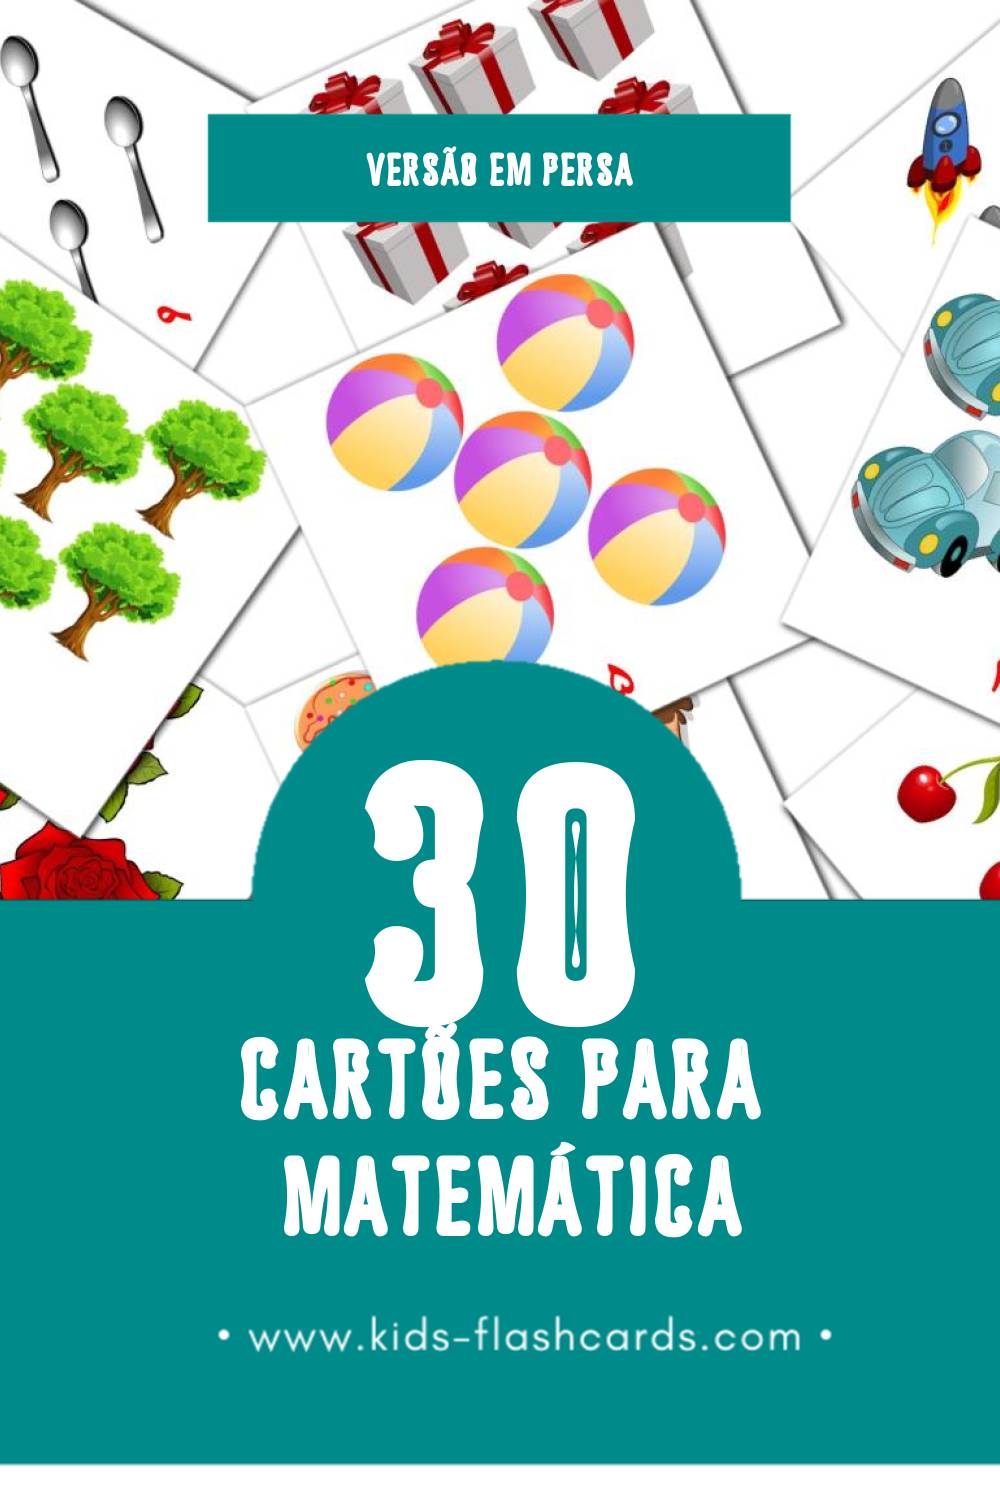 Flashcards de ریاضیات Visuais para Toddlers (30 cartões em Persa)